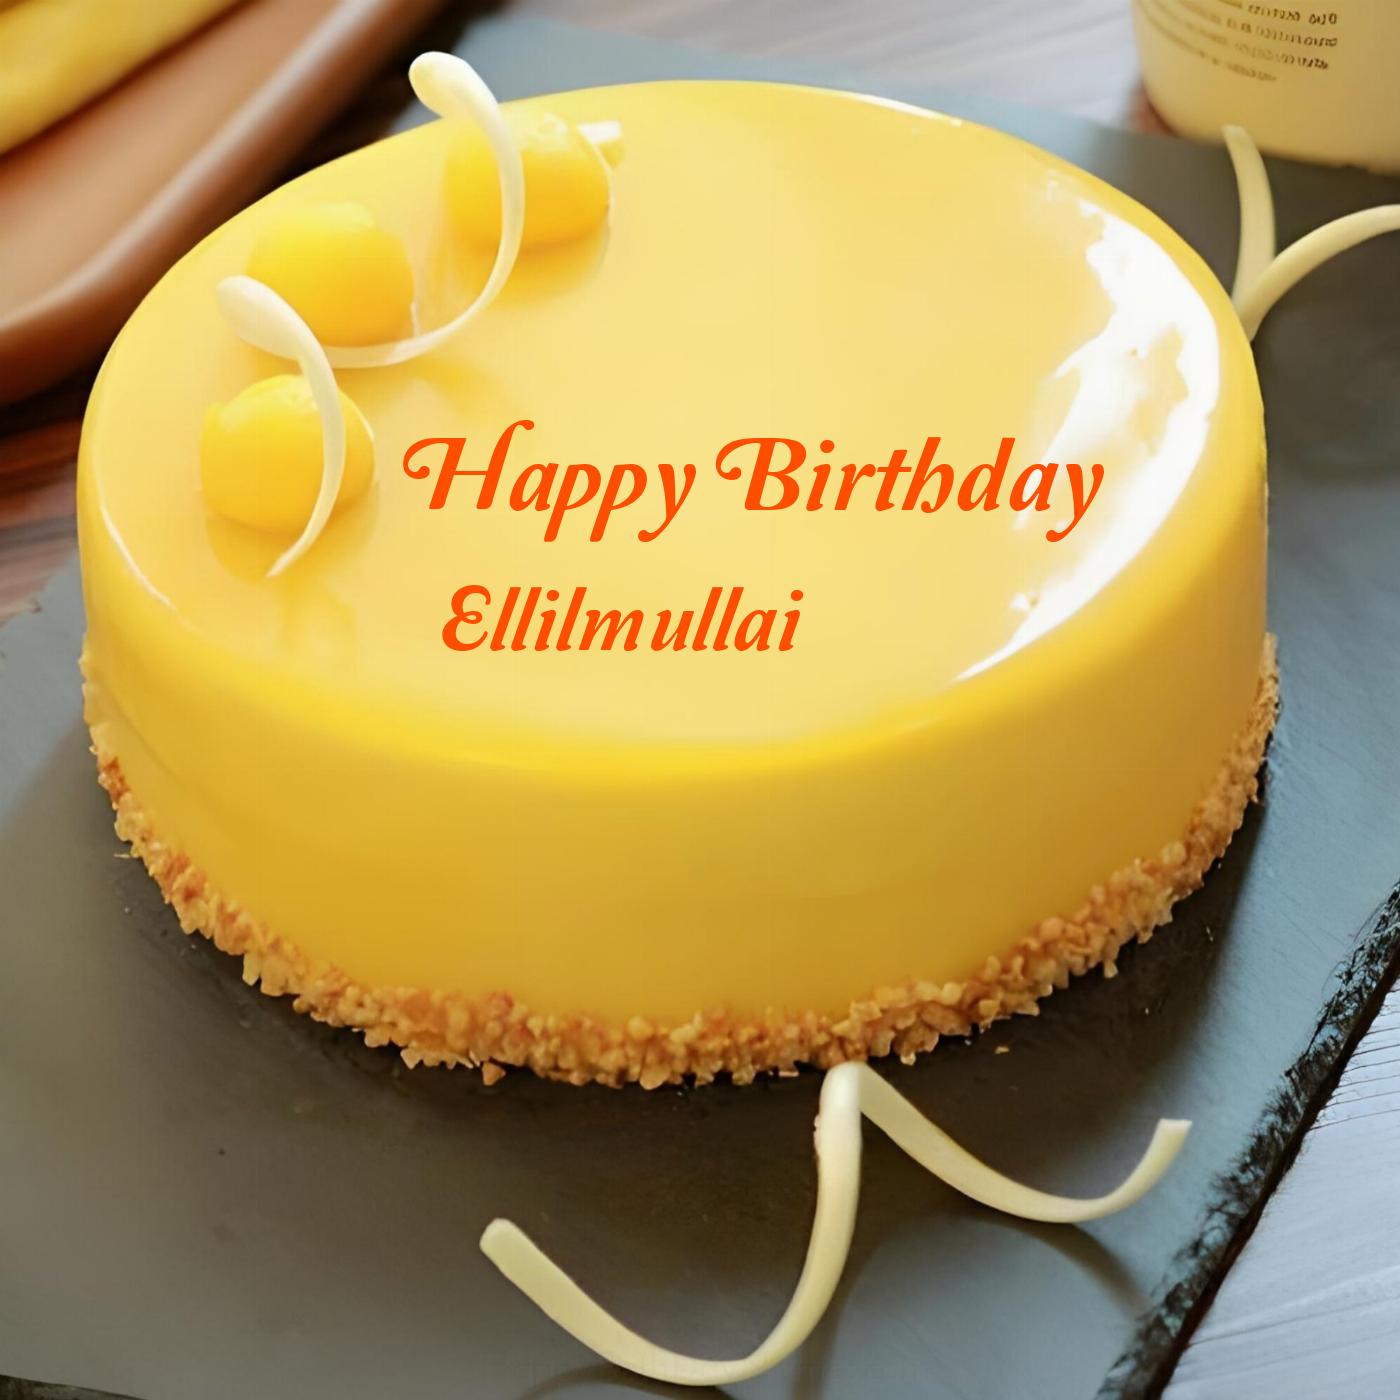 Happy Birthday Ellilmullai Beautiful Yellow Cake